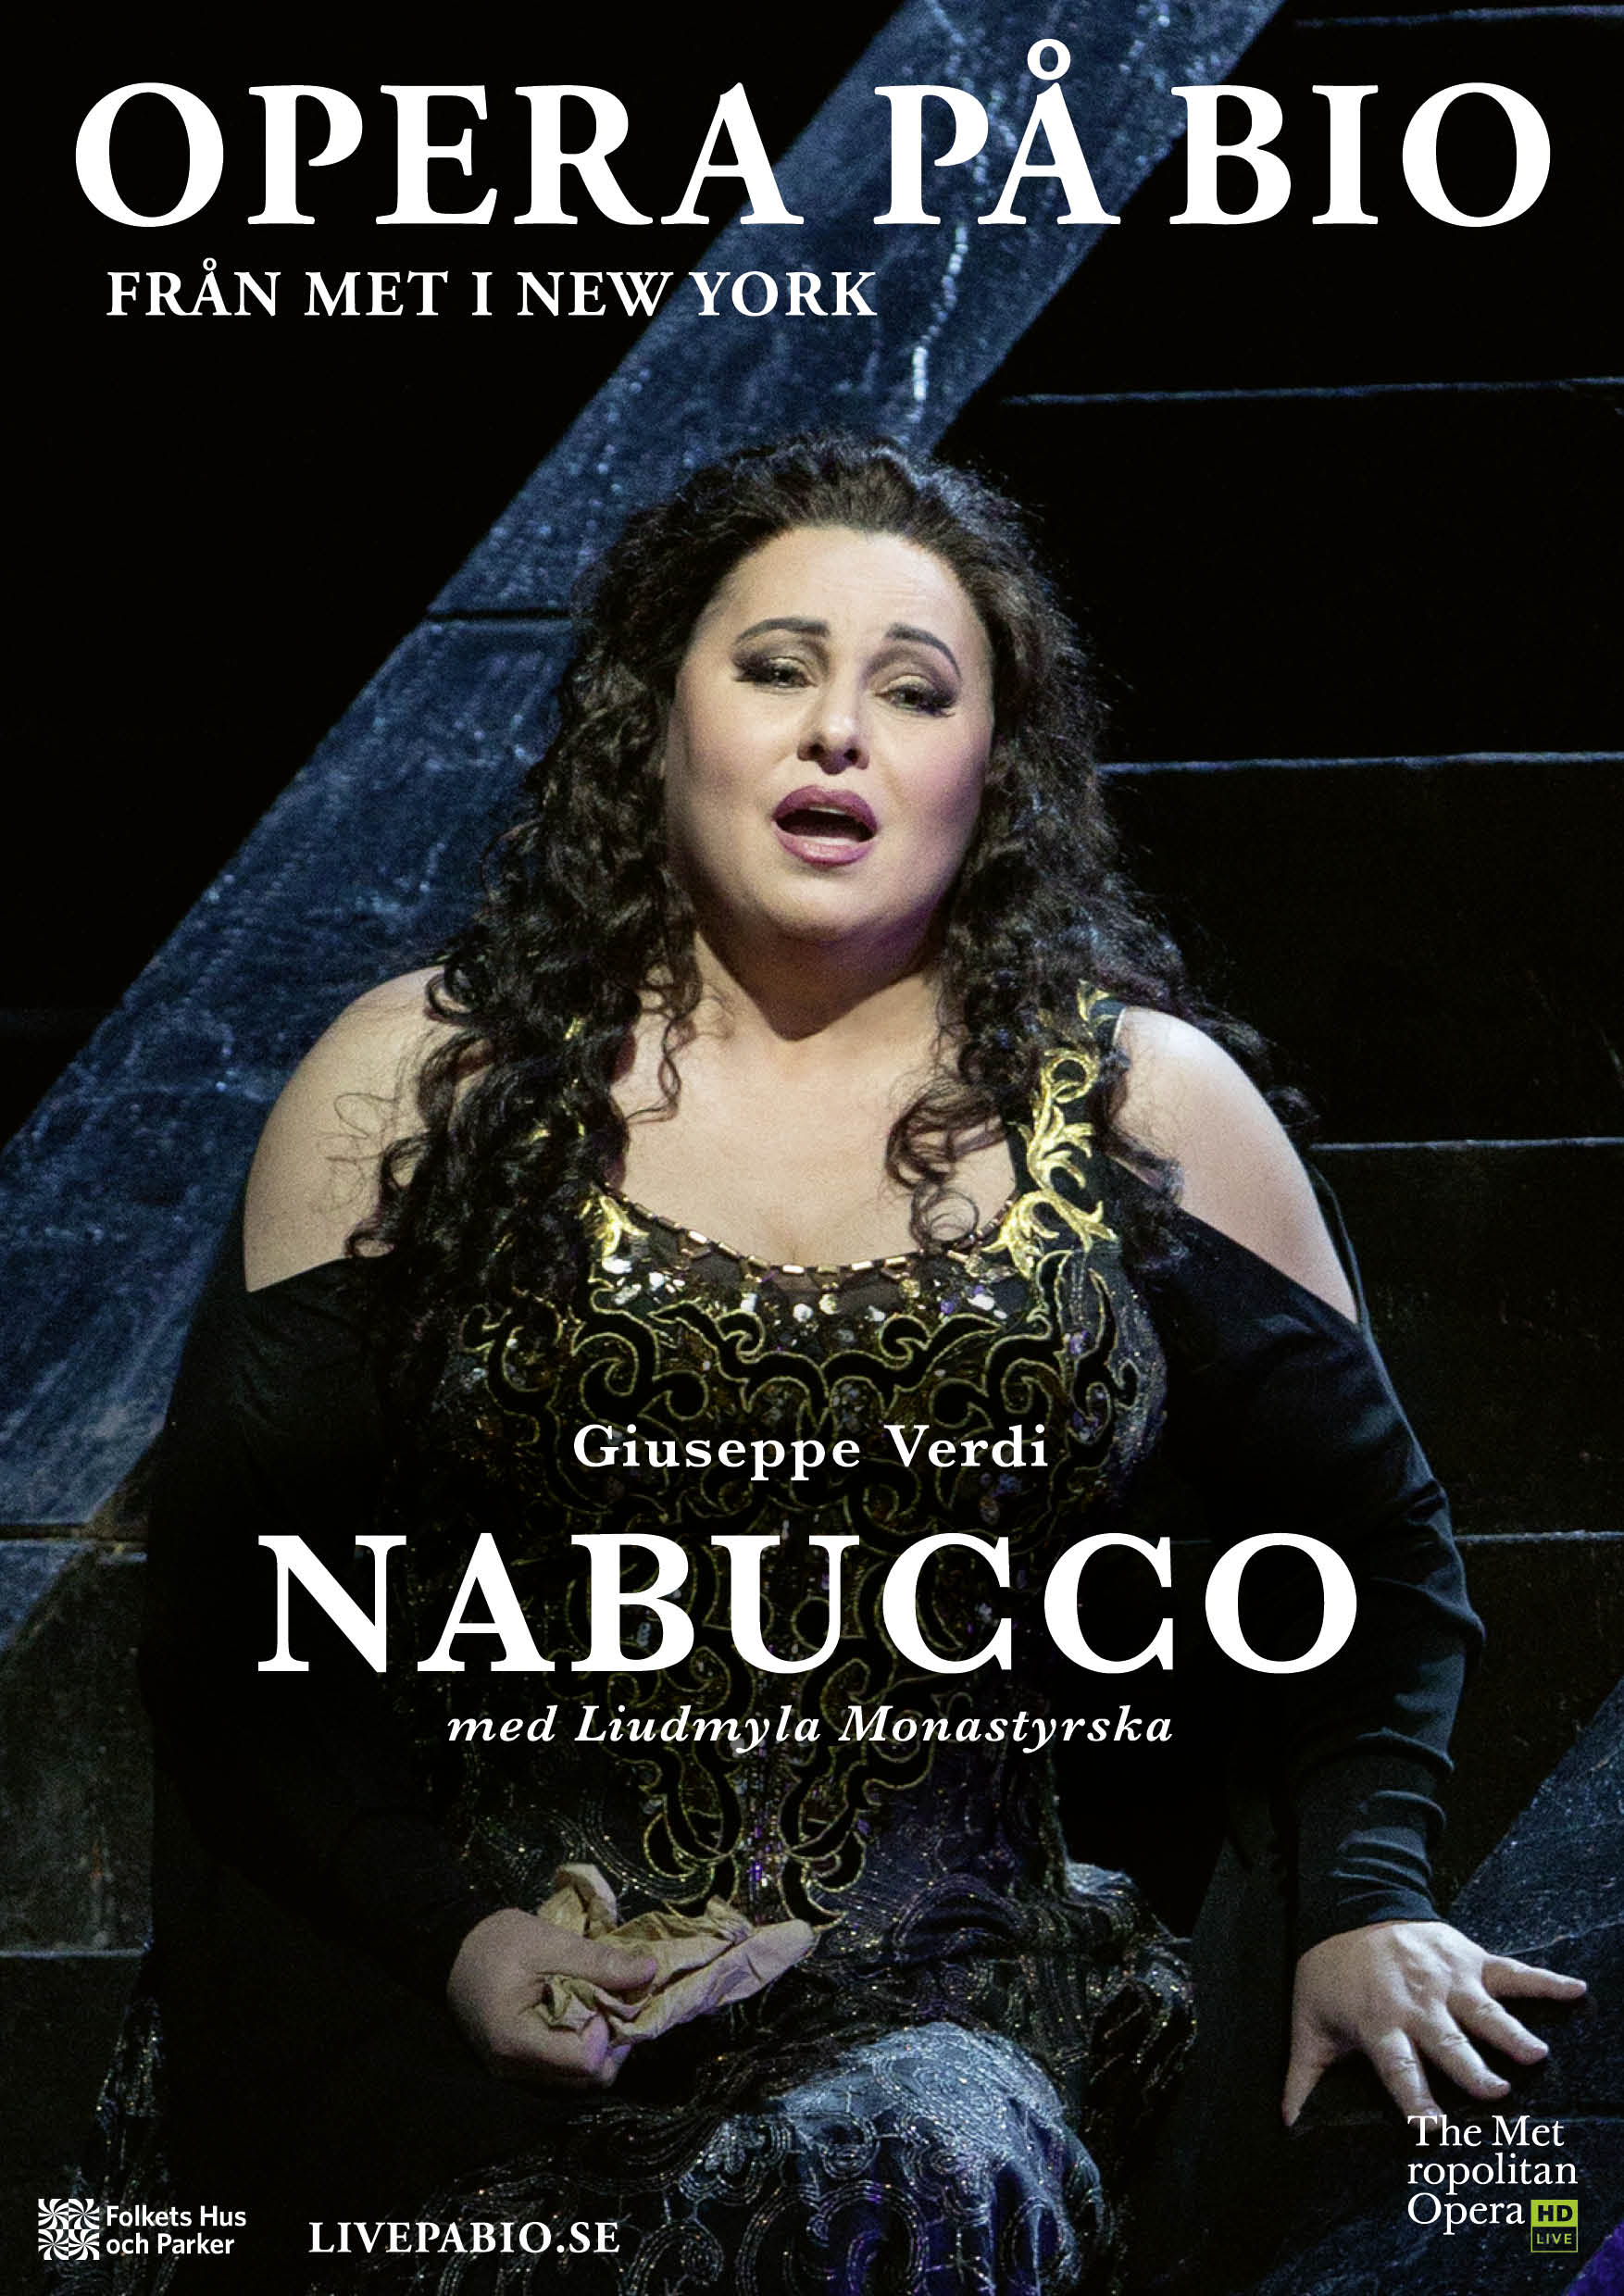 6/1 Nabucco